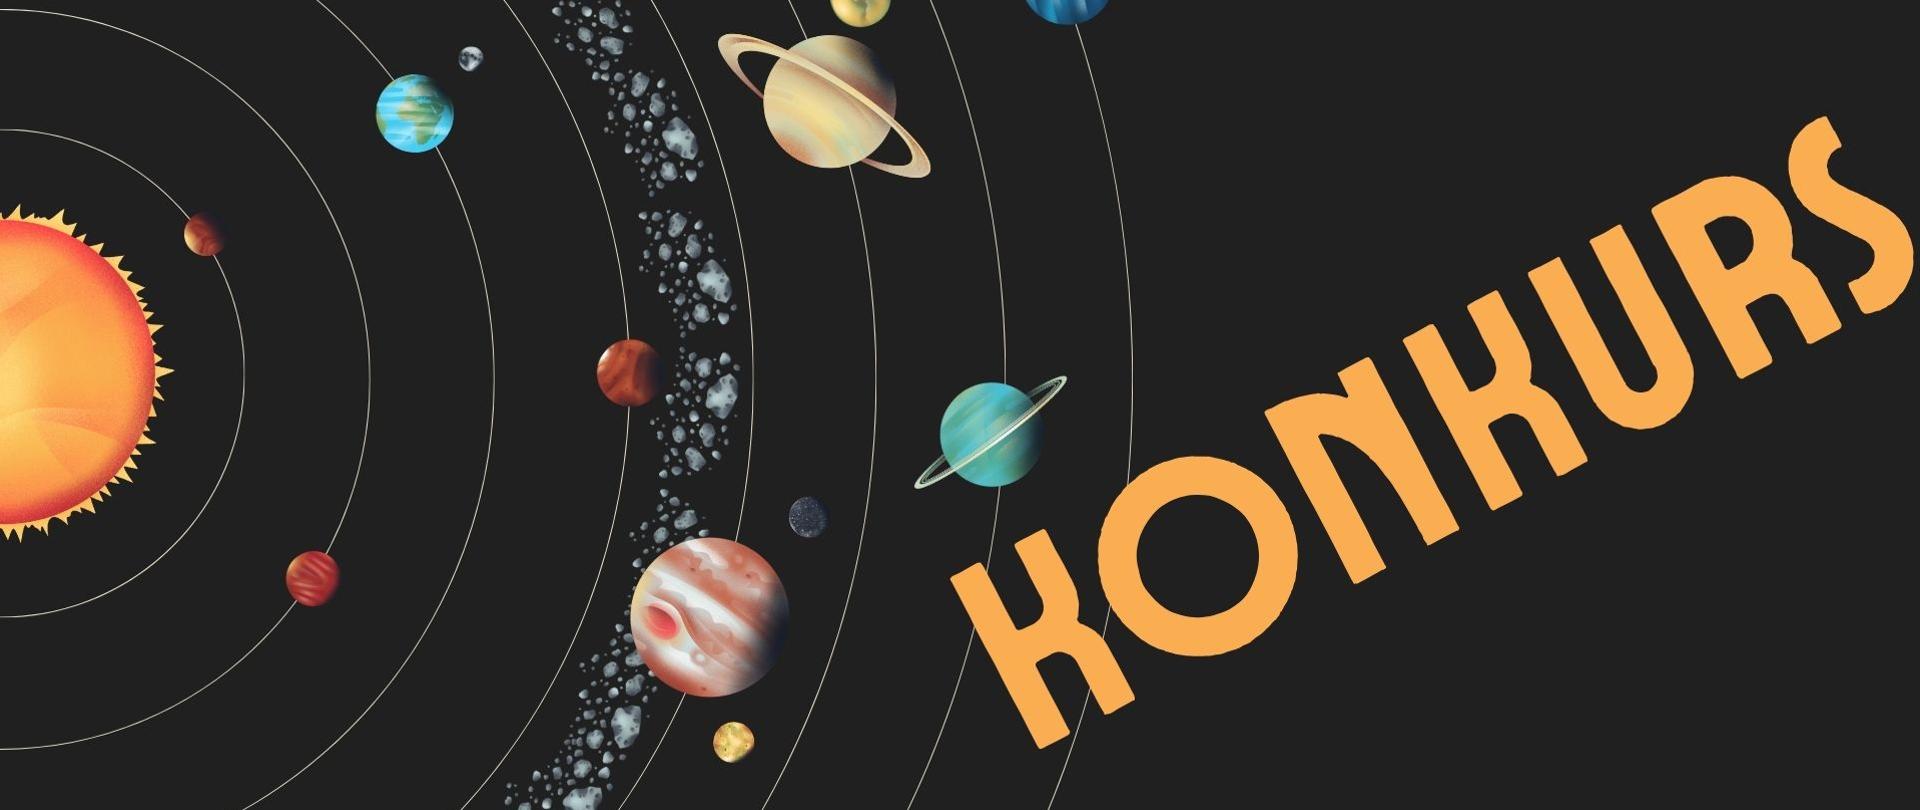 Plakat z okazji konkursu w roku Mikołaja Kopernika.
Czarne tło, po lewej stronie planety układu słonecznego na orbitach, po prawej stronie po przekątnej napis konkurs w kolorze łososiowym.